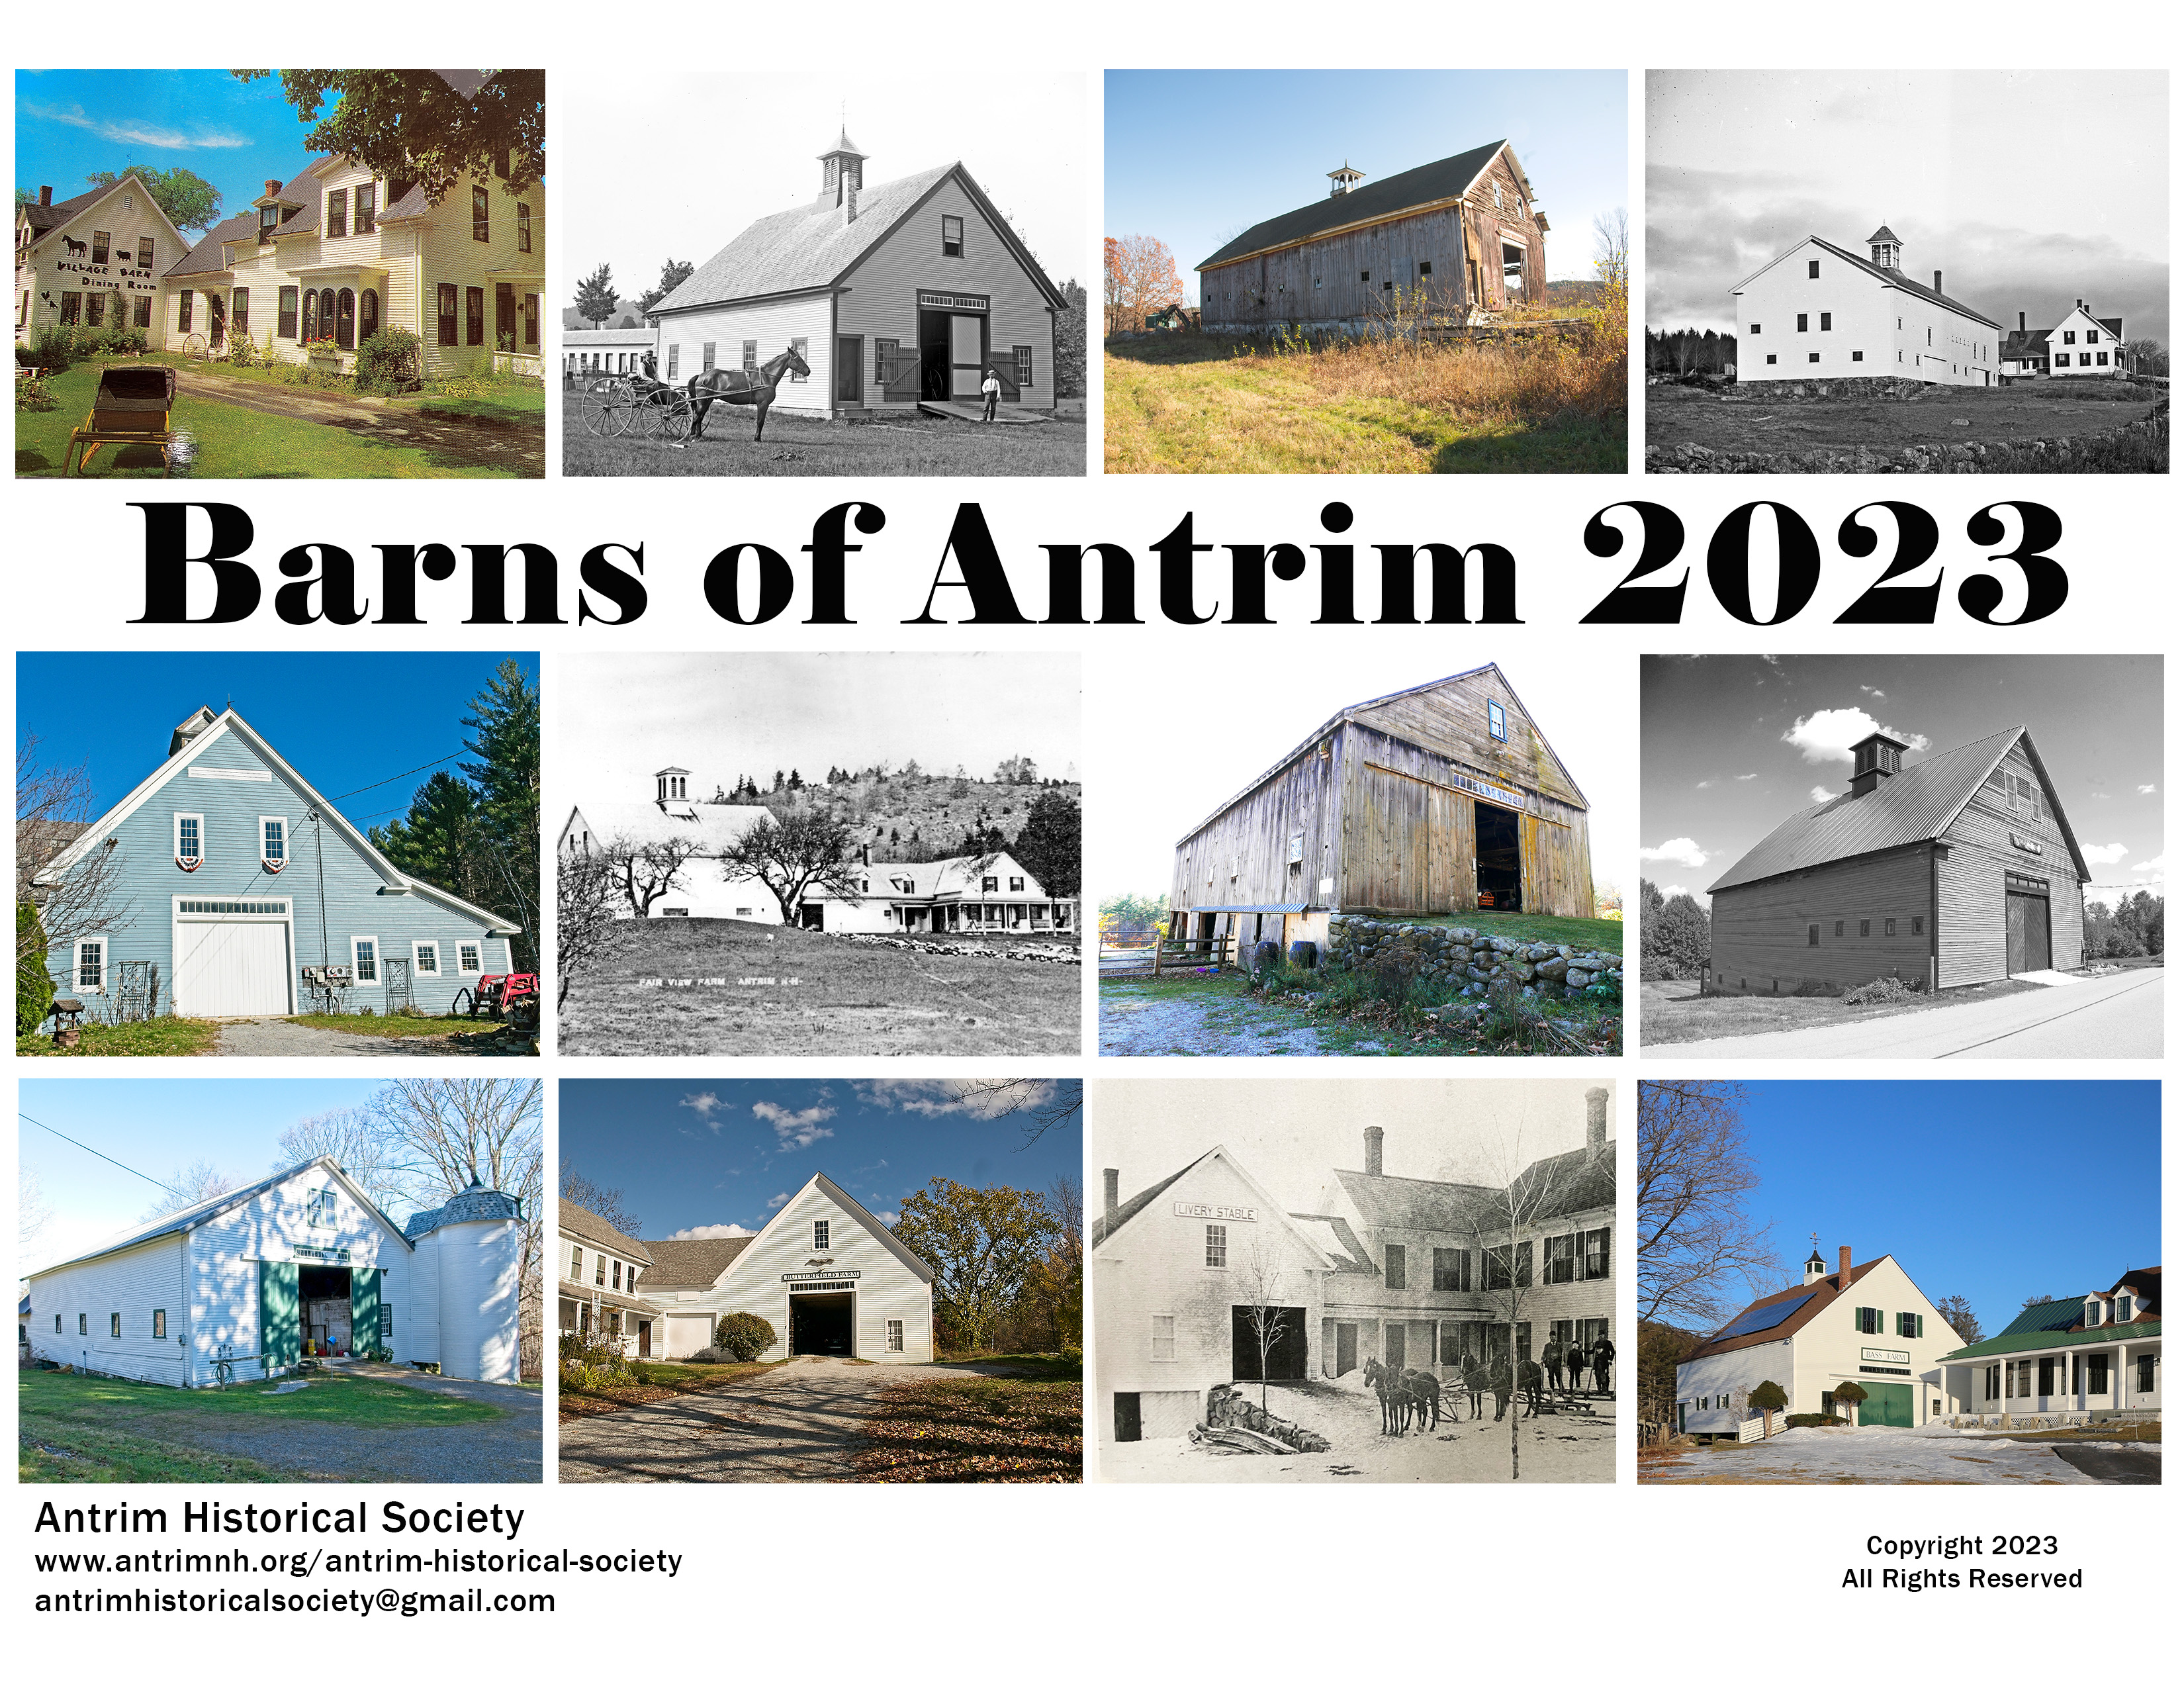 Barns of Antrim 2023 Calendar